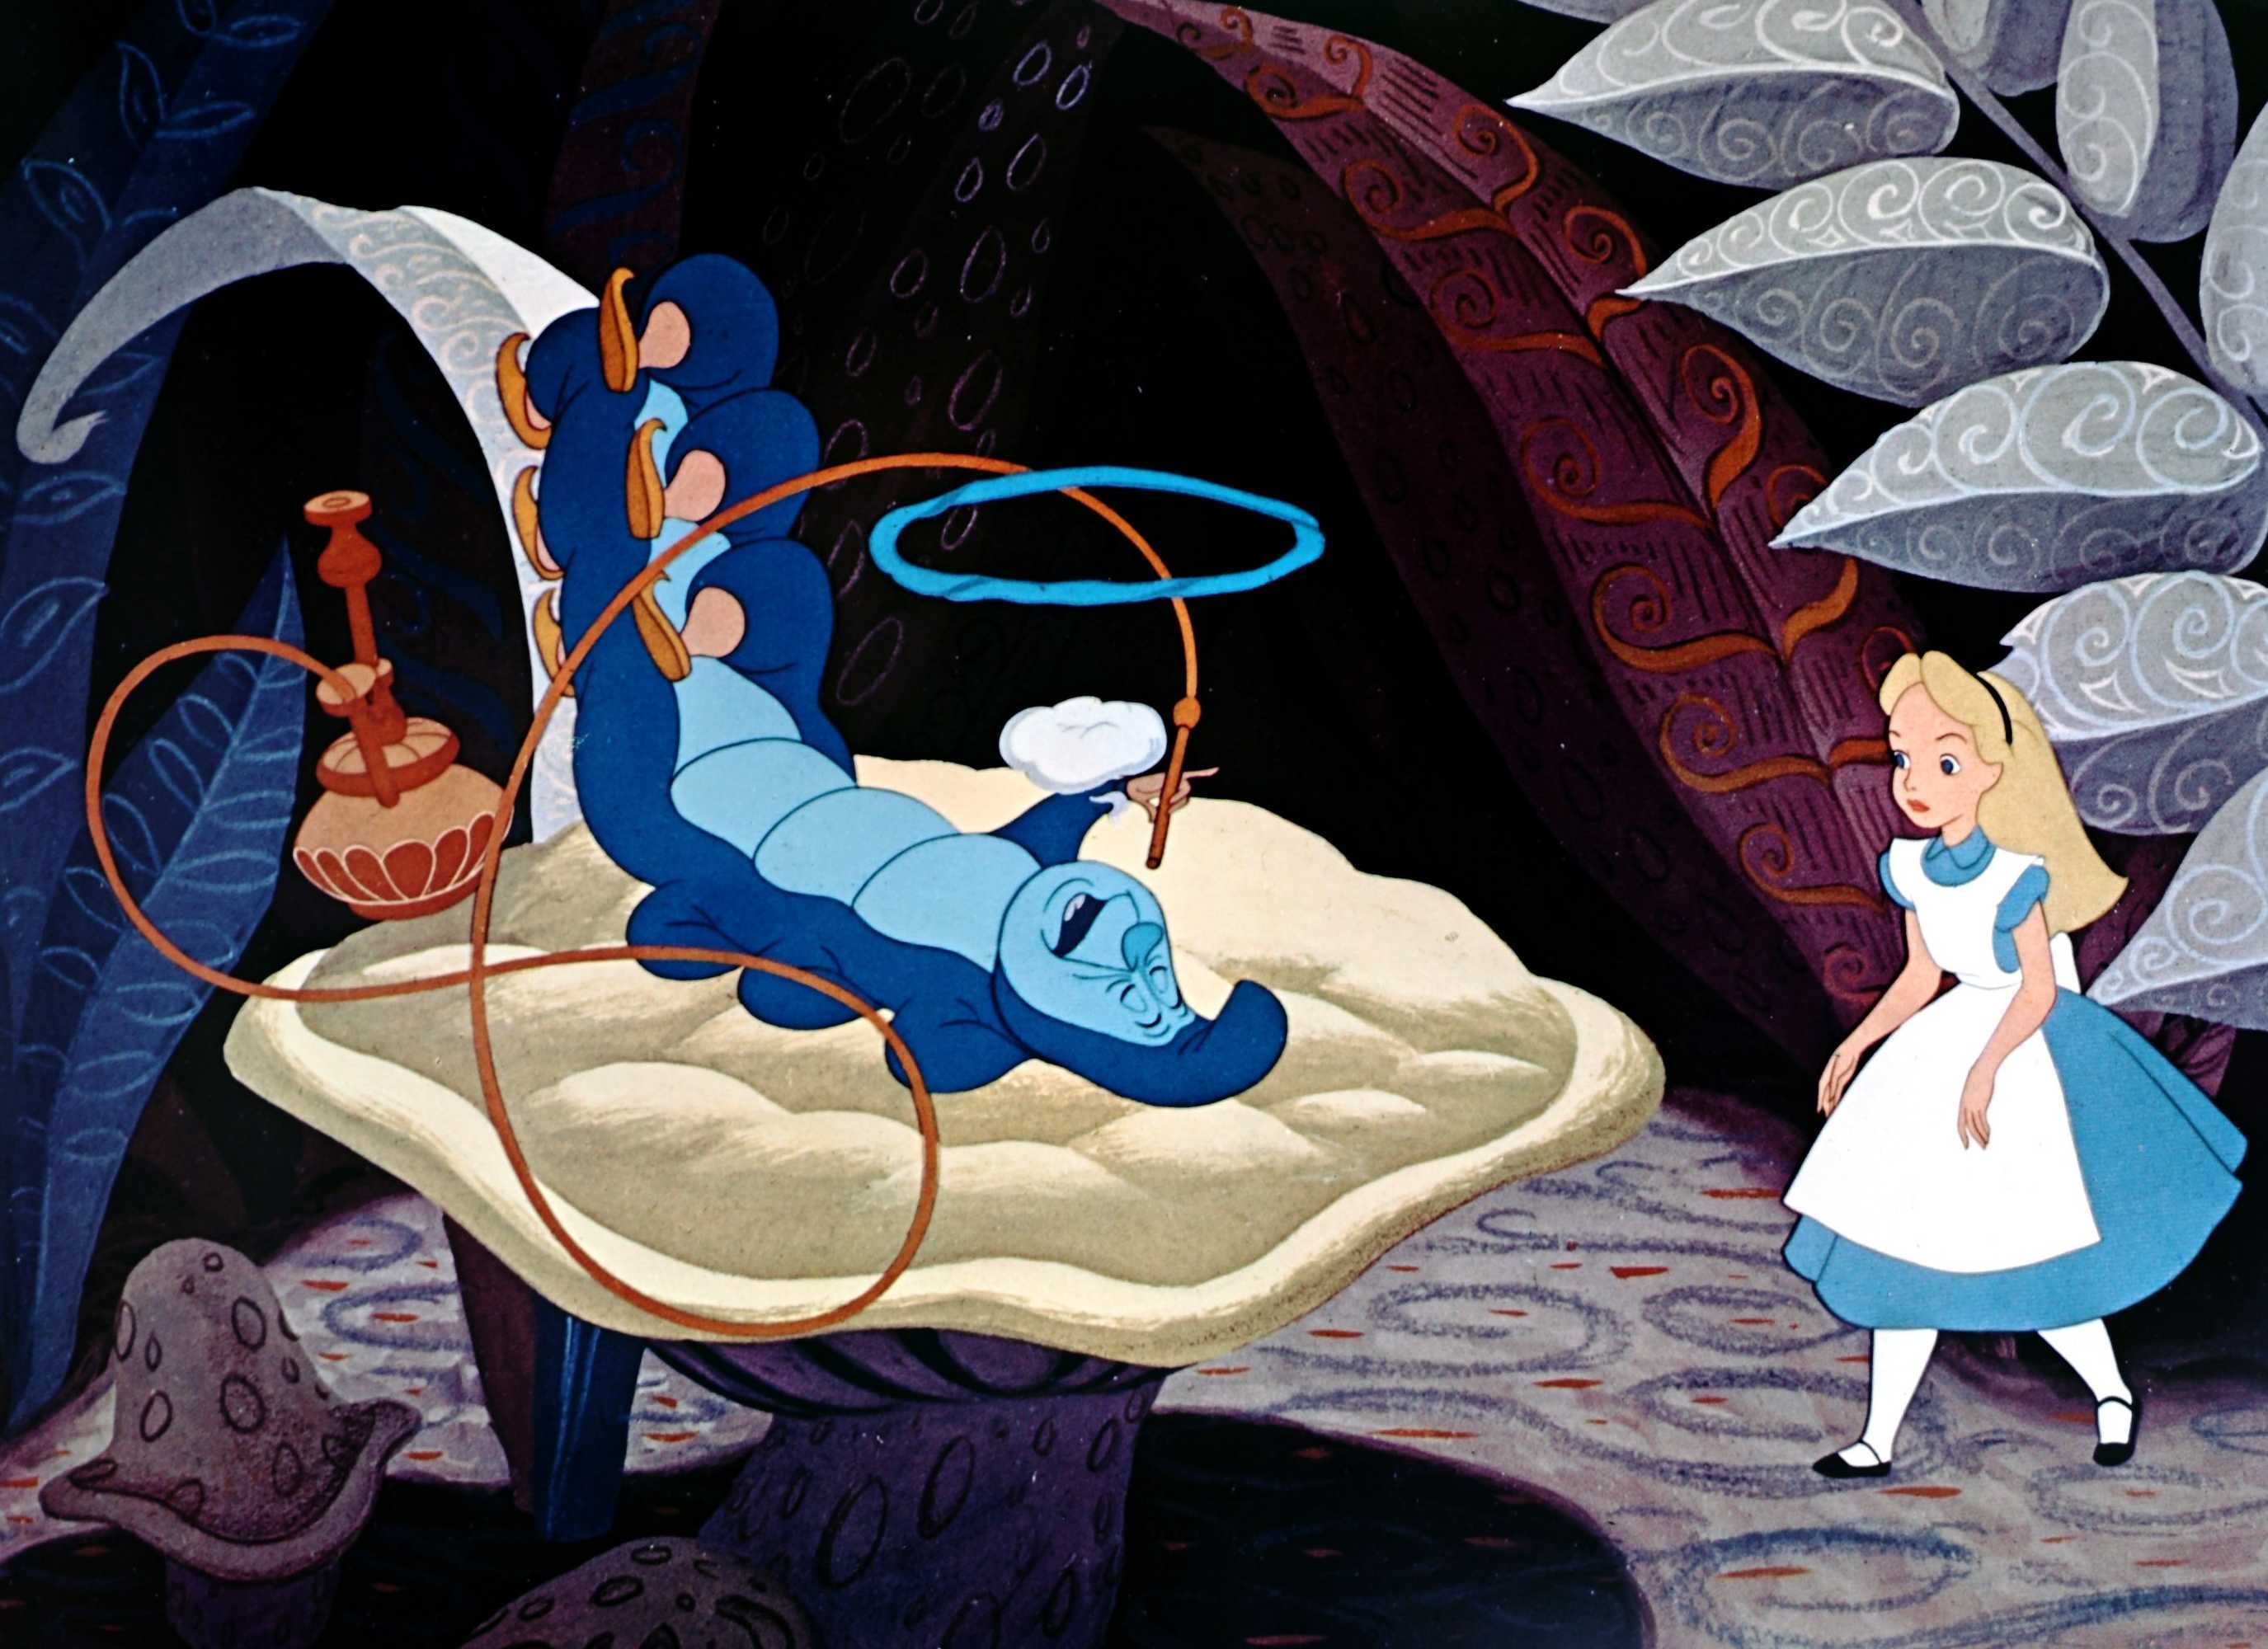 Le Avventure di Alice nel Paese delle meraviglie, di Lewis Carroll, pubblicato nel 1865 e tradotto dall’inglese in 175 lingue